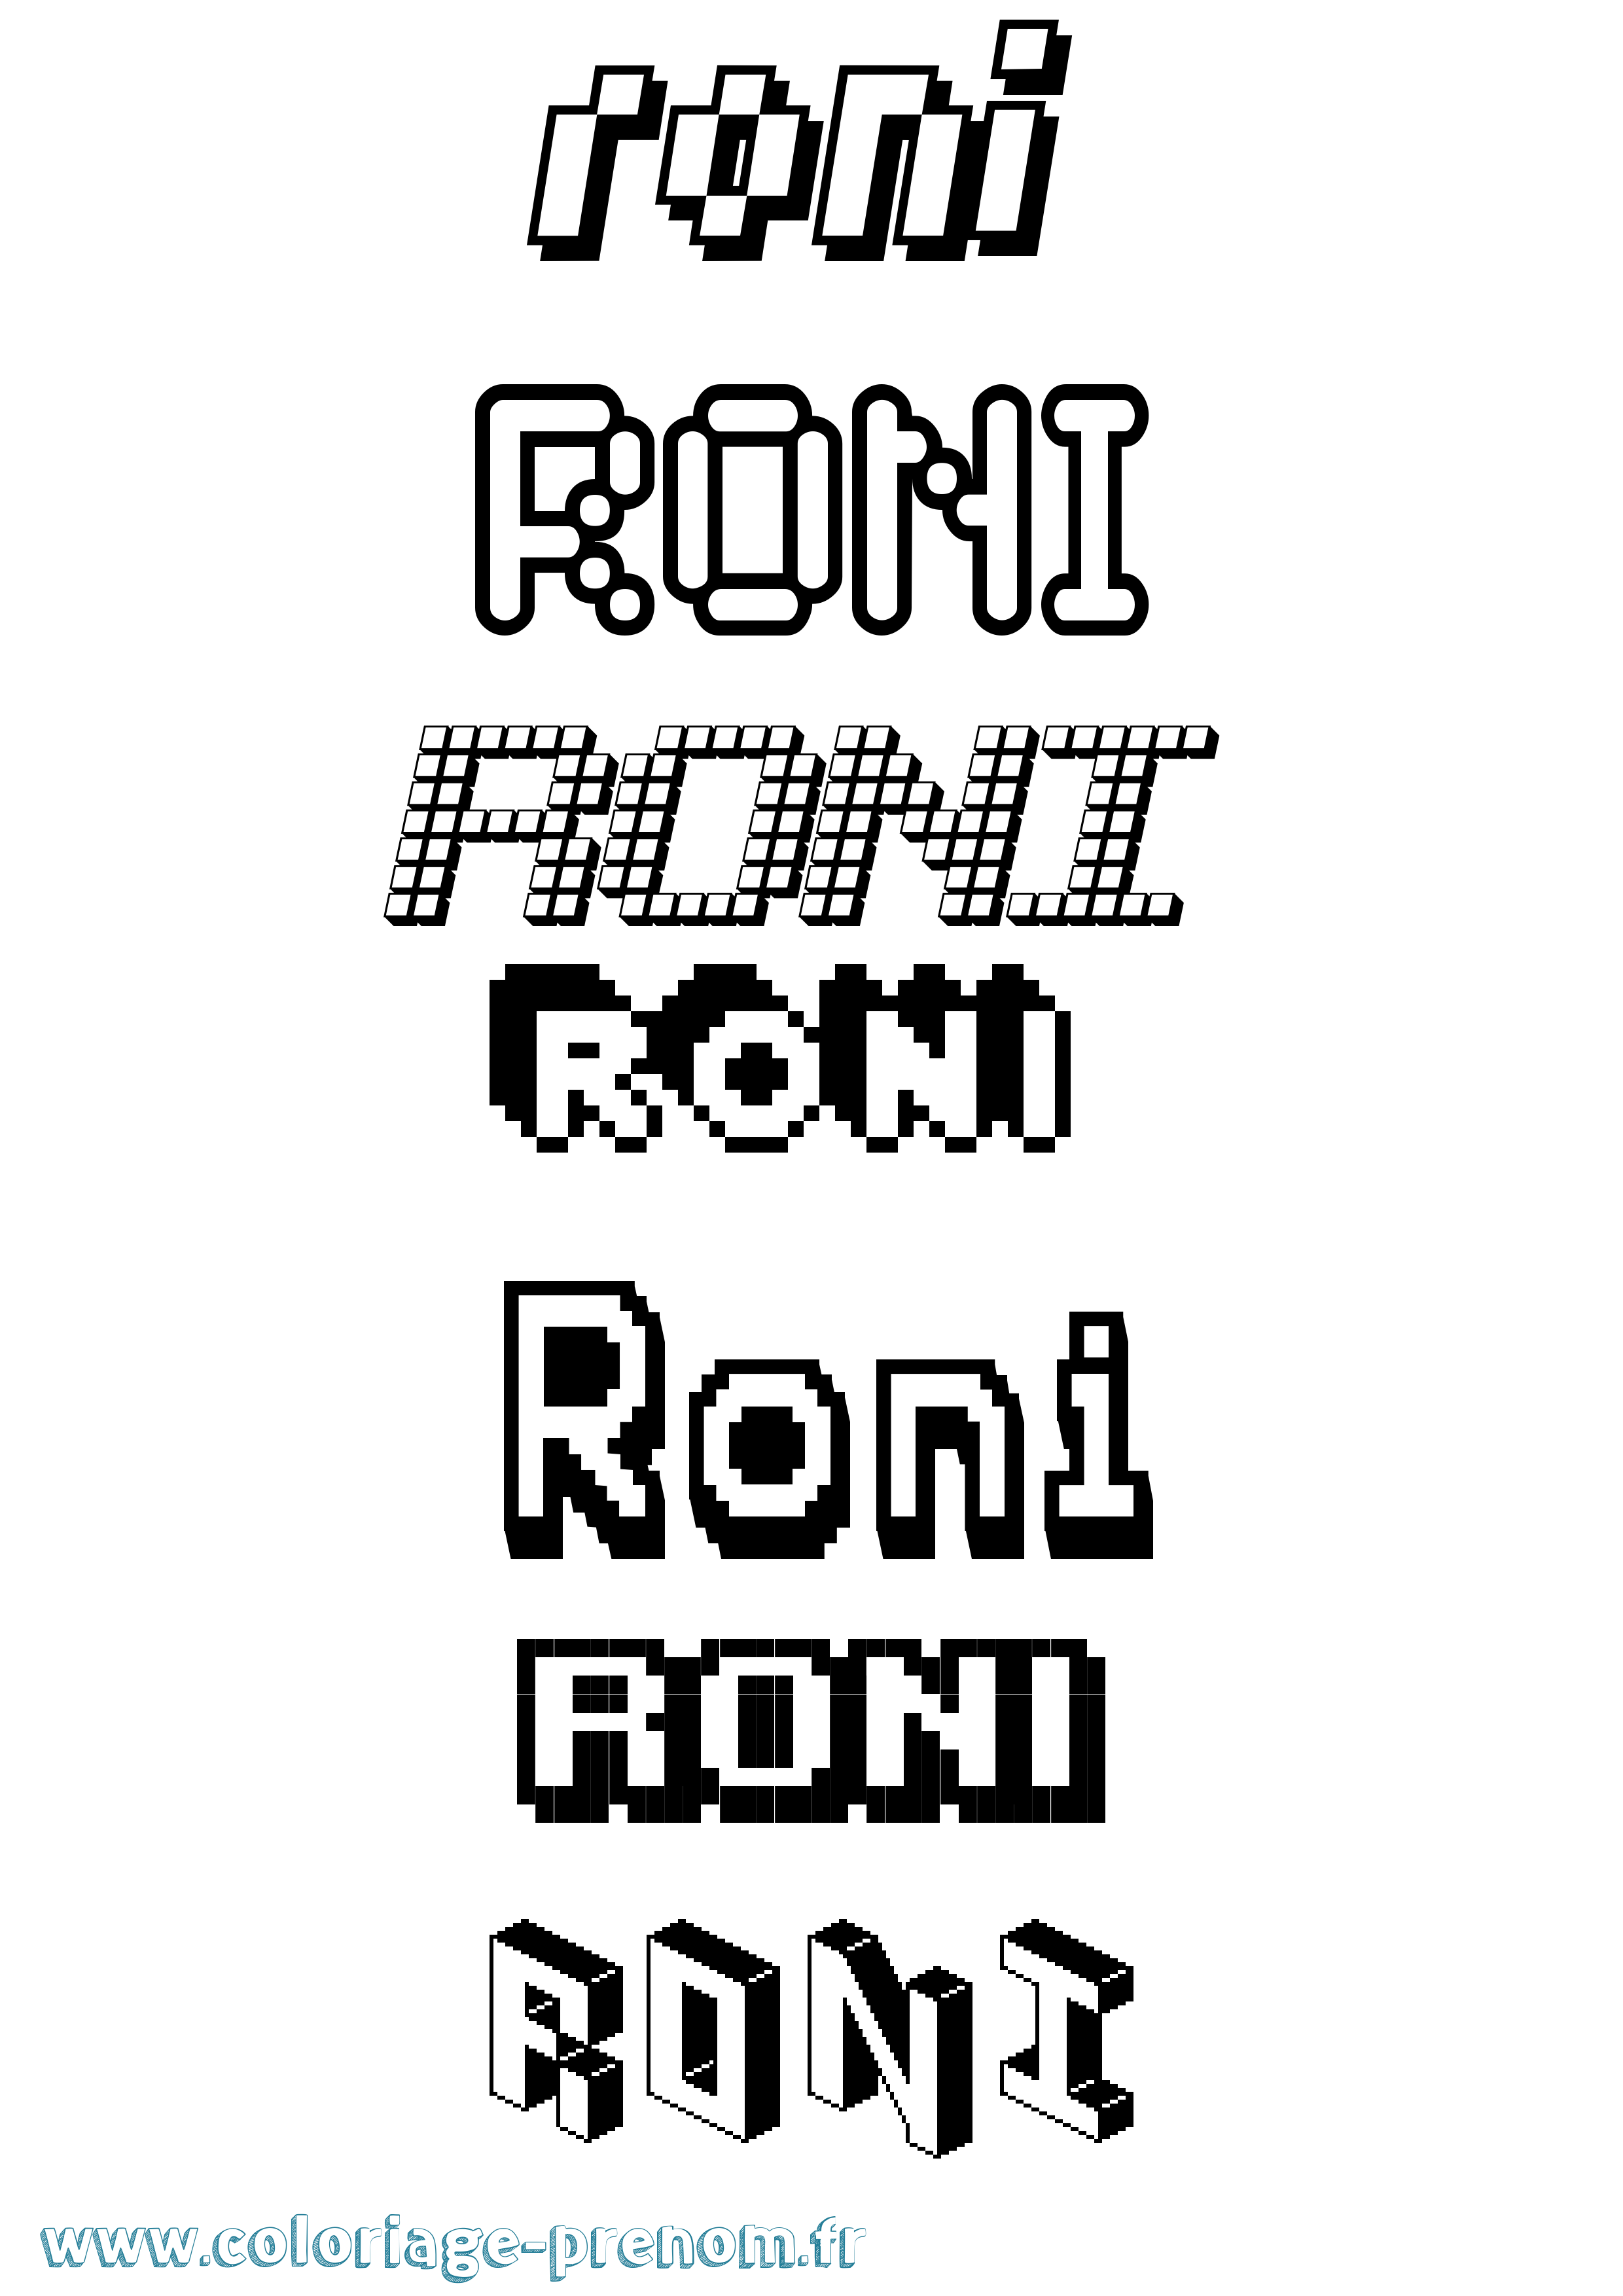 Coloriage prénom Roni Pixel